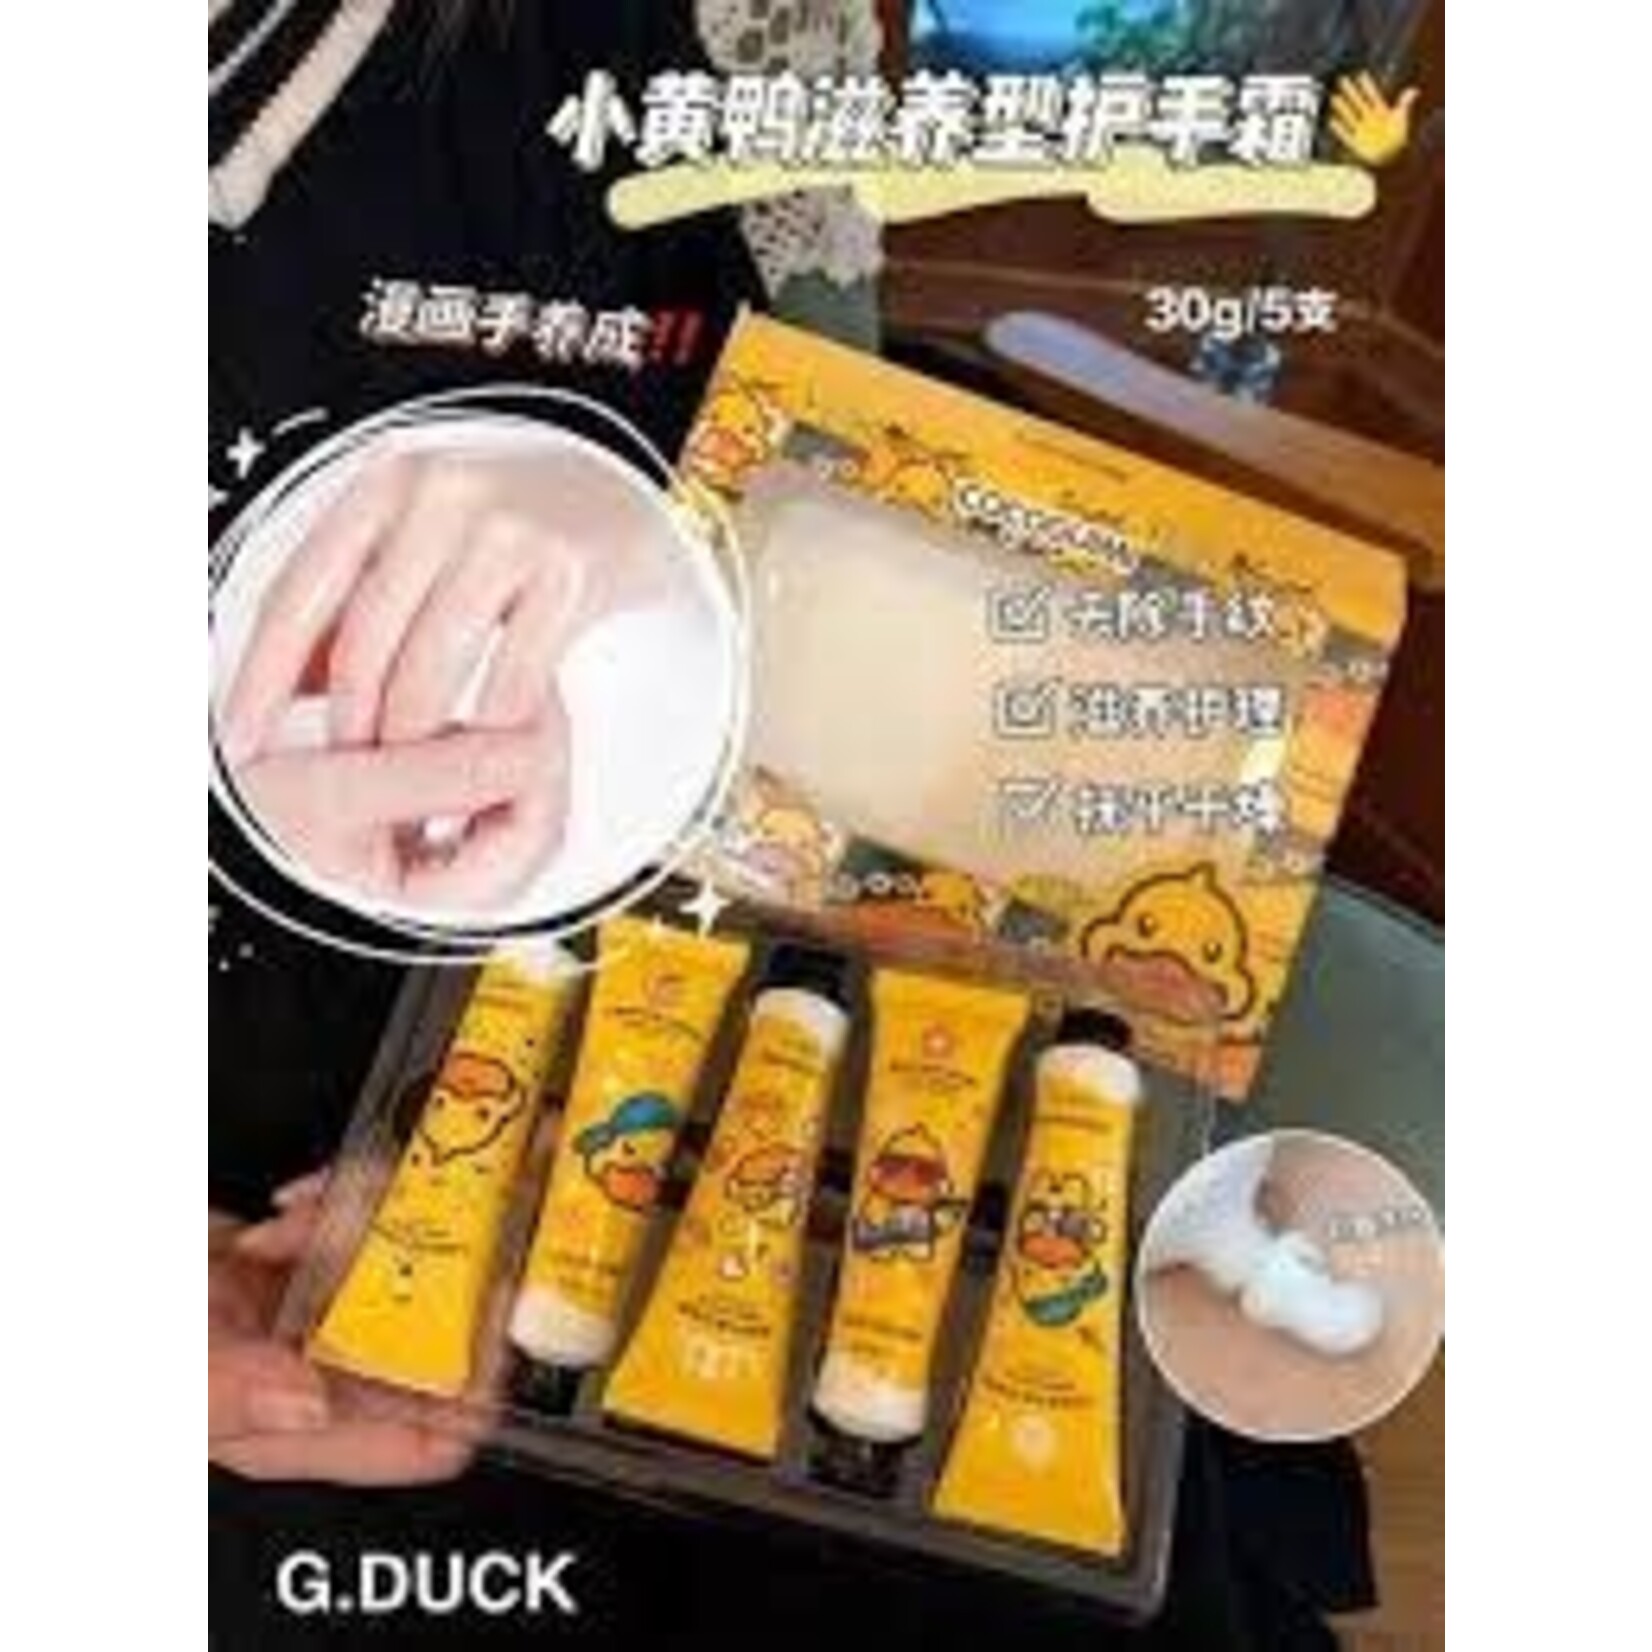 G.Duck Kids G.Duck COCOGUIMI Moisturizer Hand Cream 5Pk